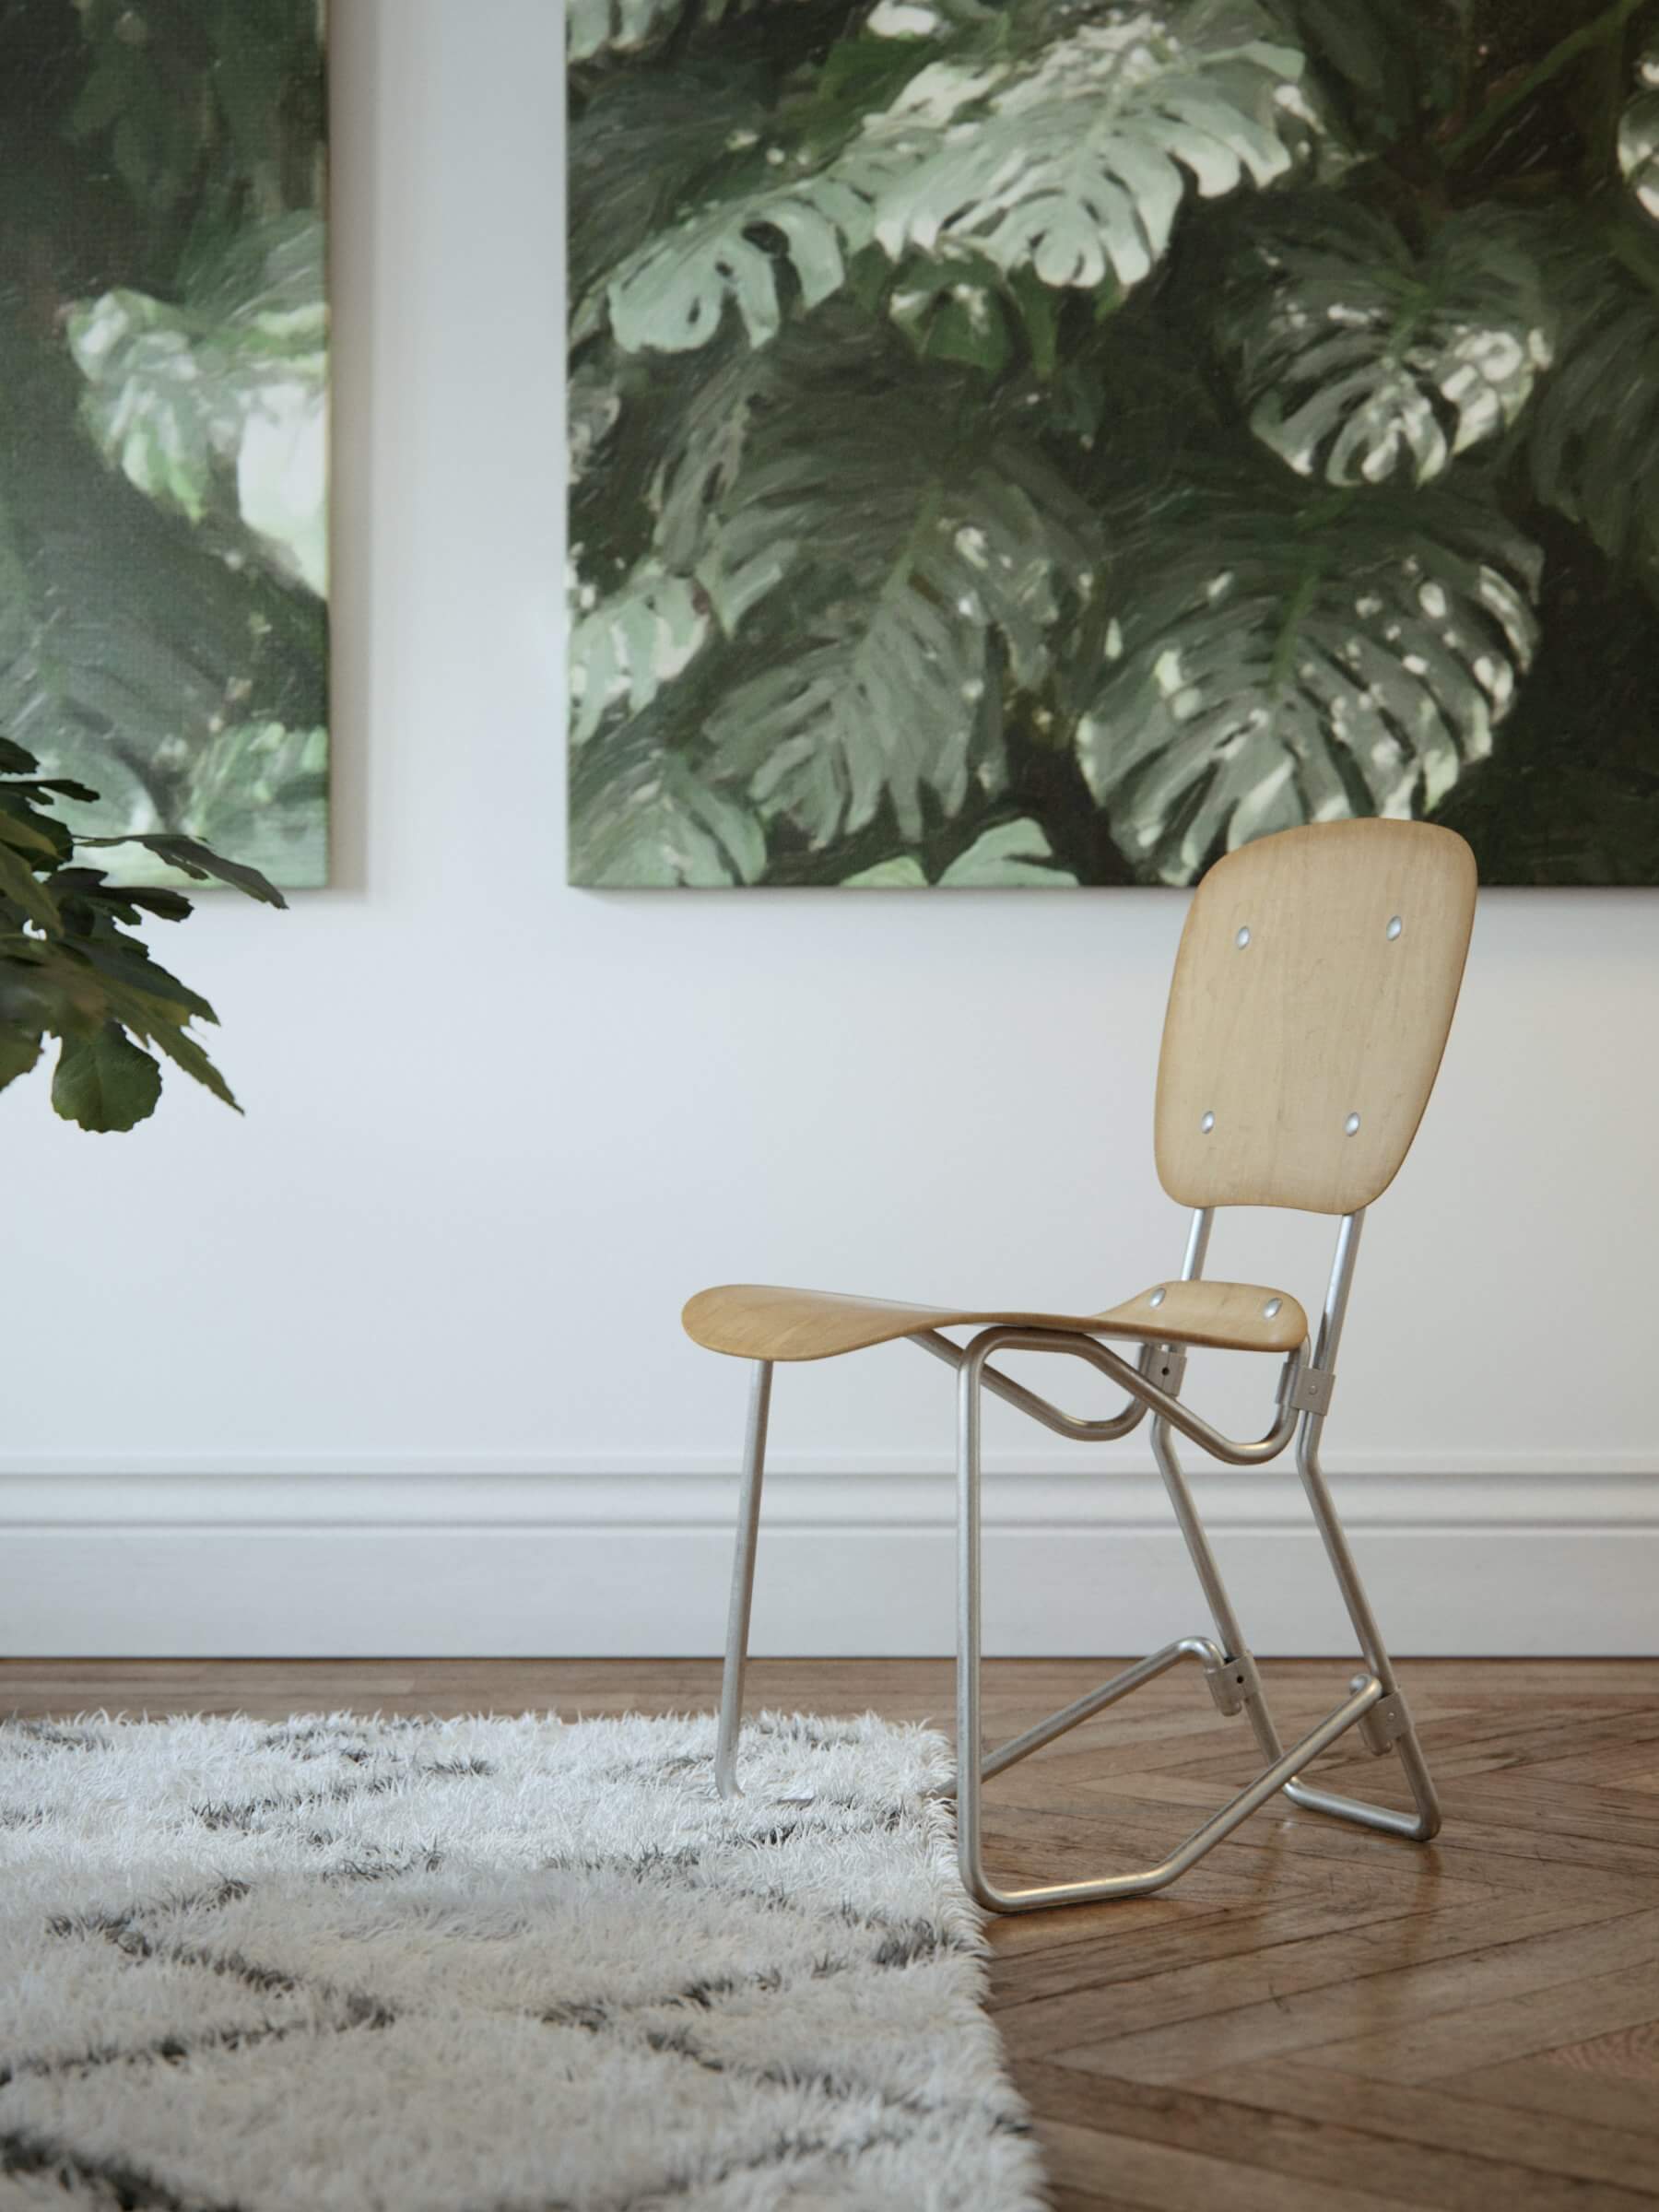 Classical apartment chair - cgi visualization